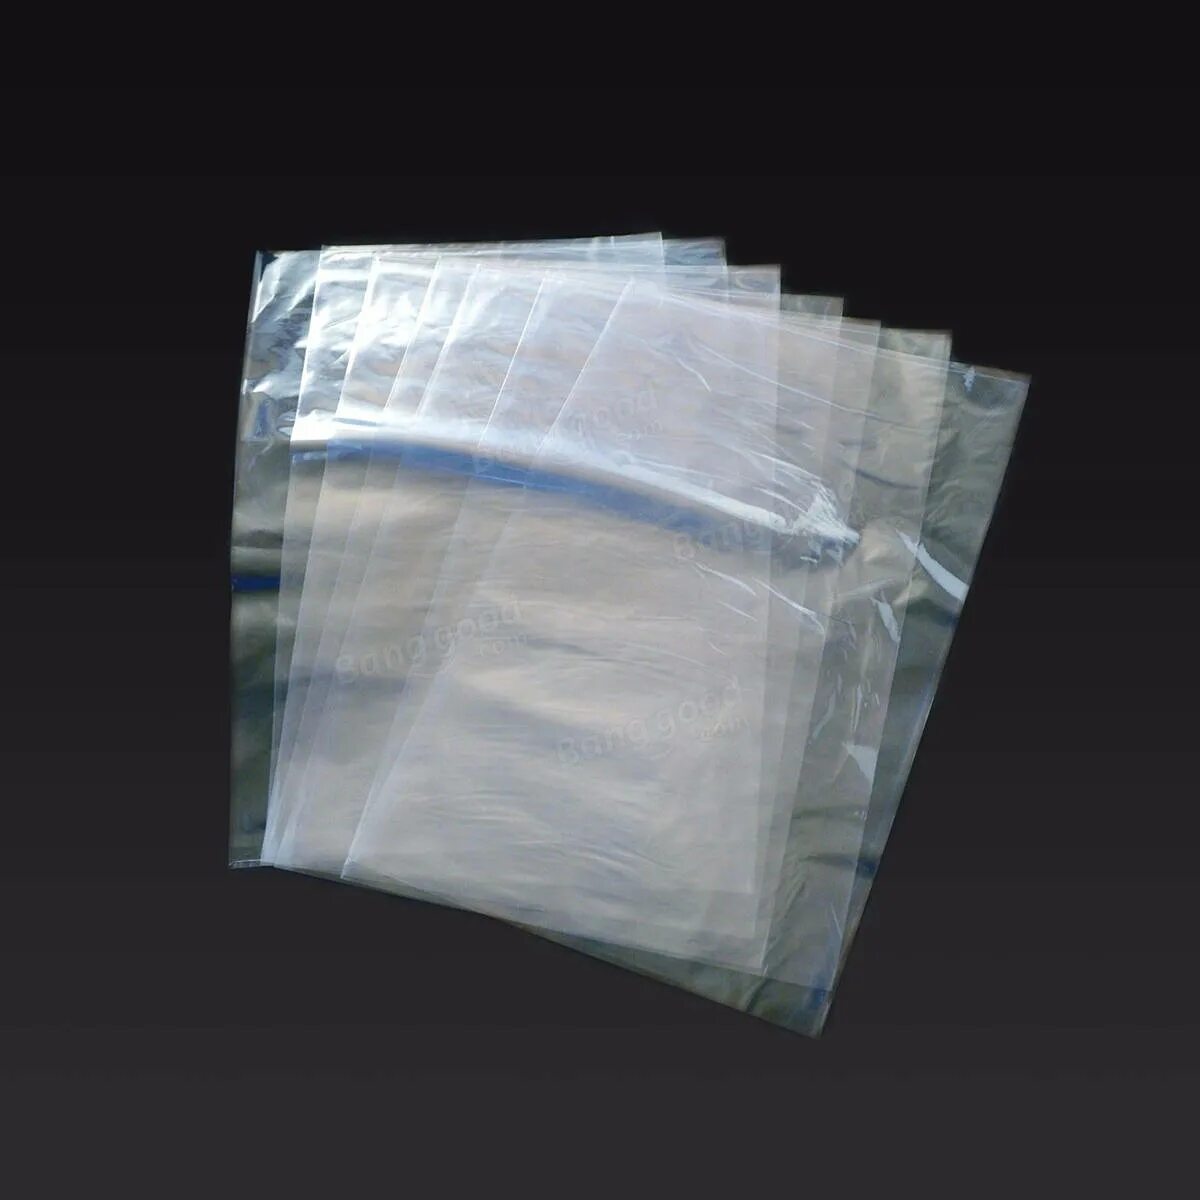 Купить интернет пленку. Пленка ПОФ 20. Теплоизоляция в пакете. Прозрачный мешок. Прозрачная упаковочная сумка.